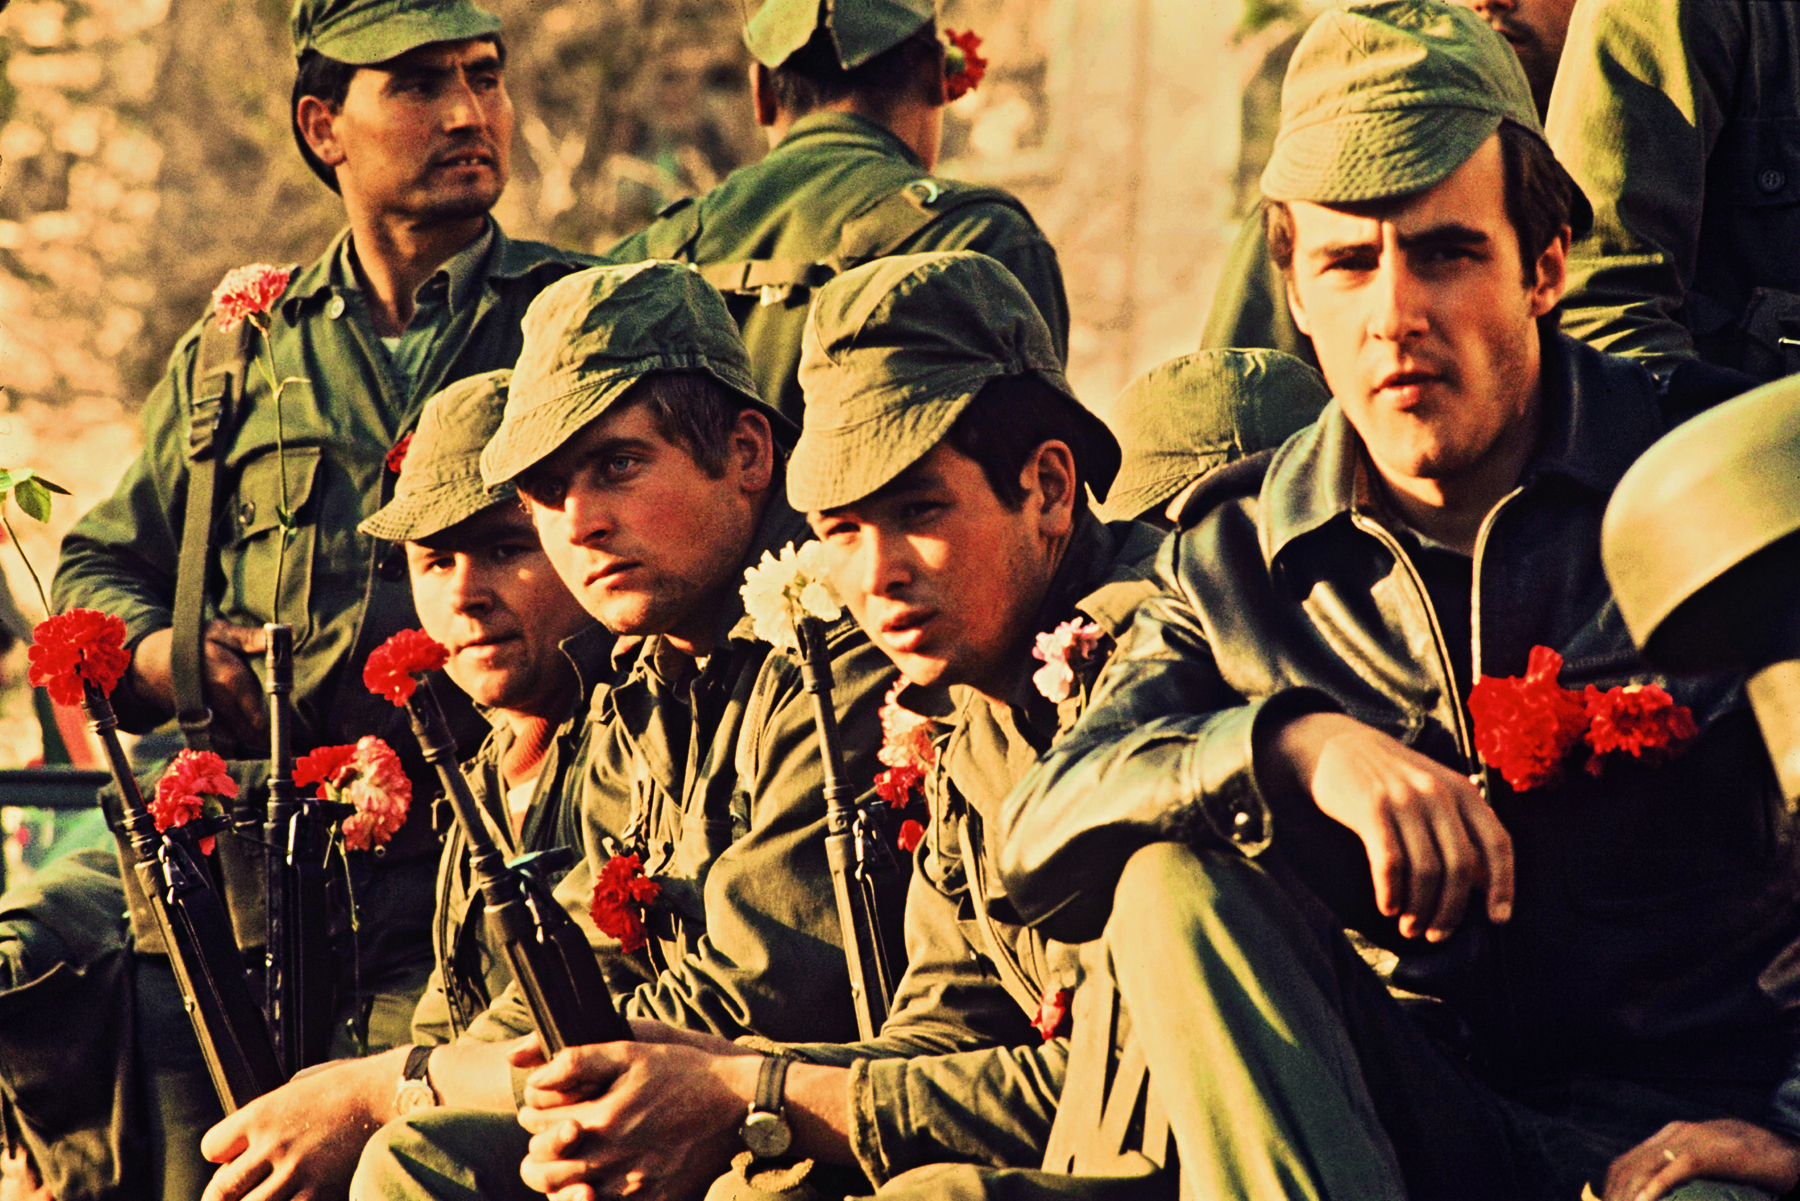 Fotografia. Soldados lado a lado, vestindo fardas e bonés, portando armas de fogo com flores vermelhas e brancas nas pontas.